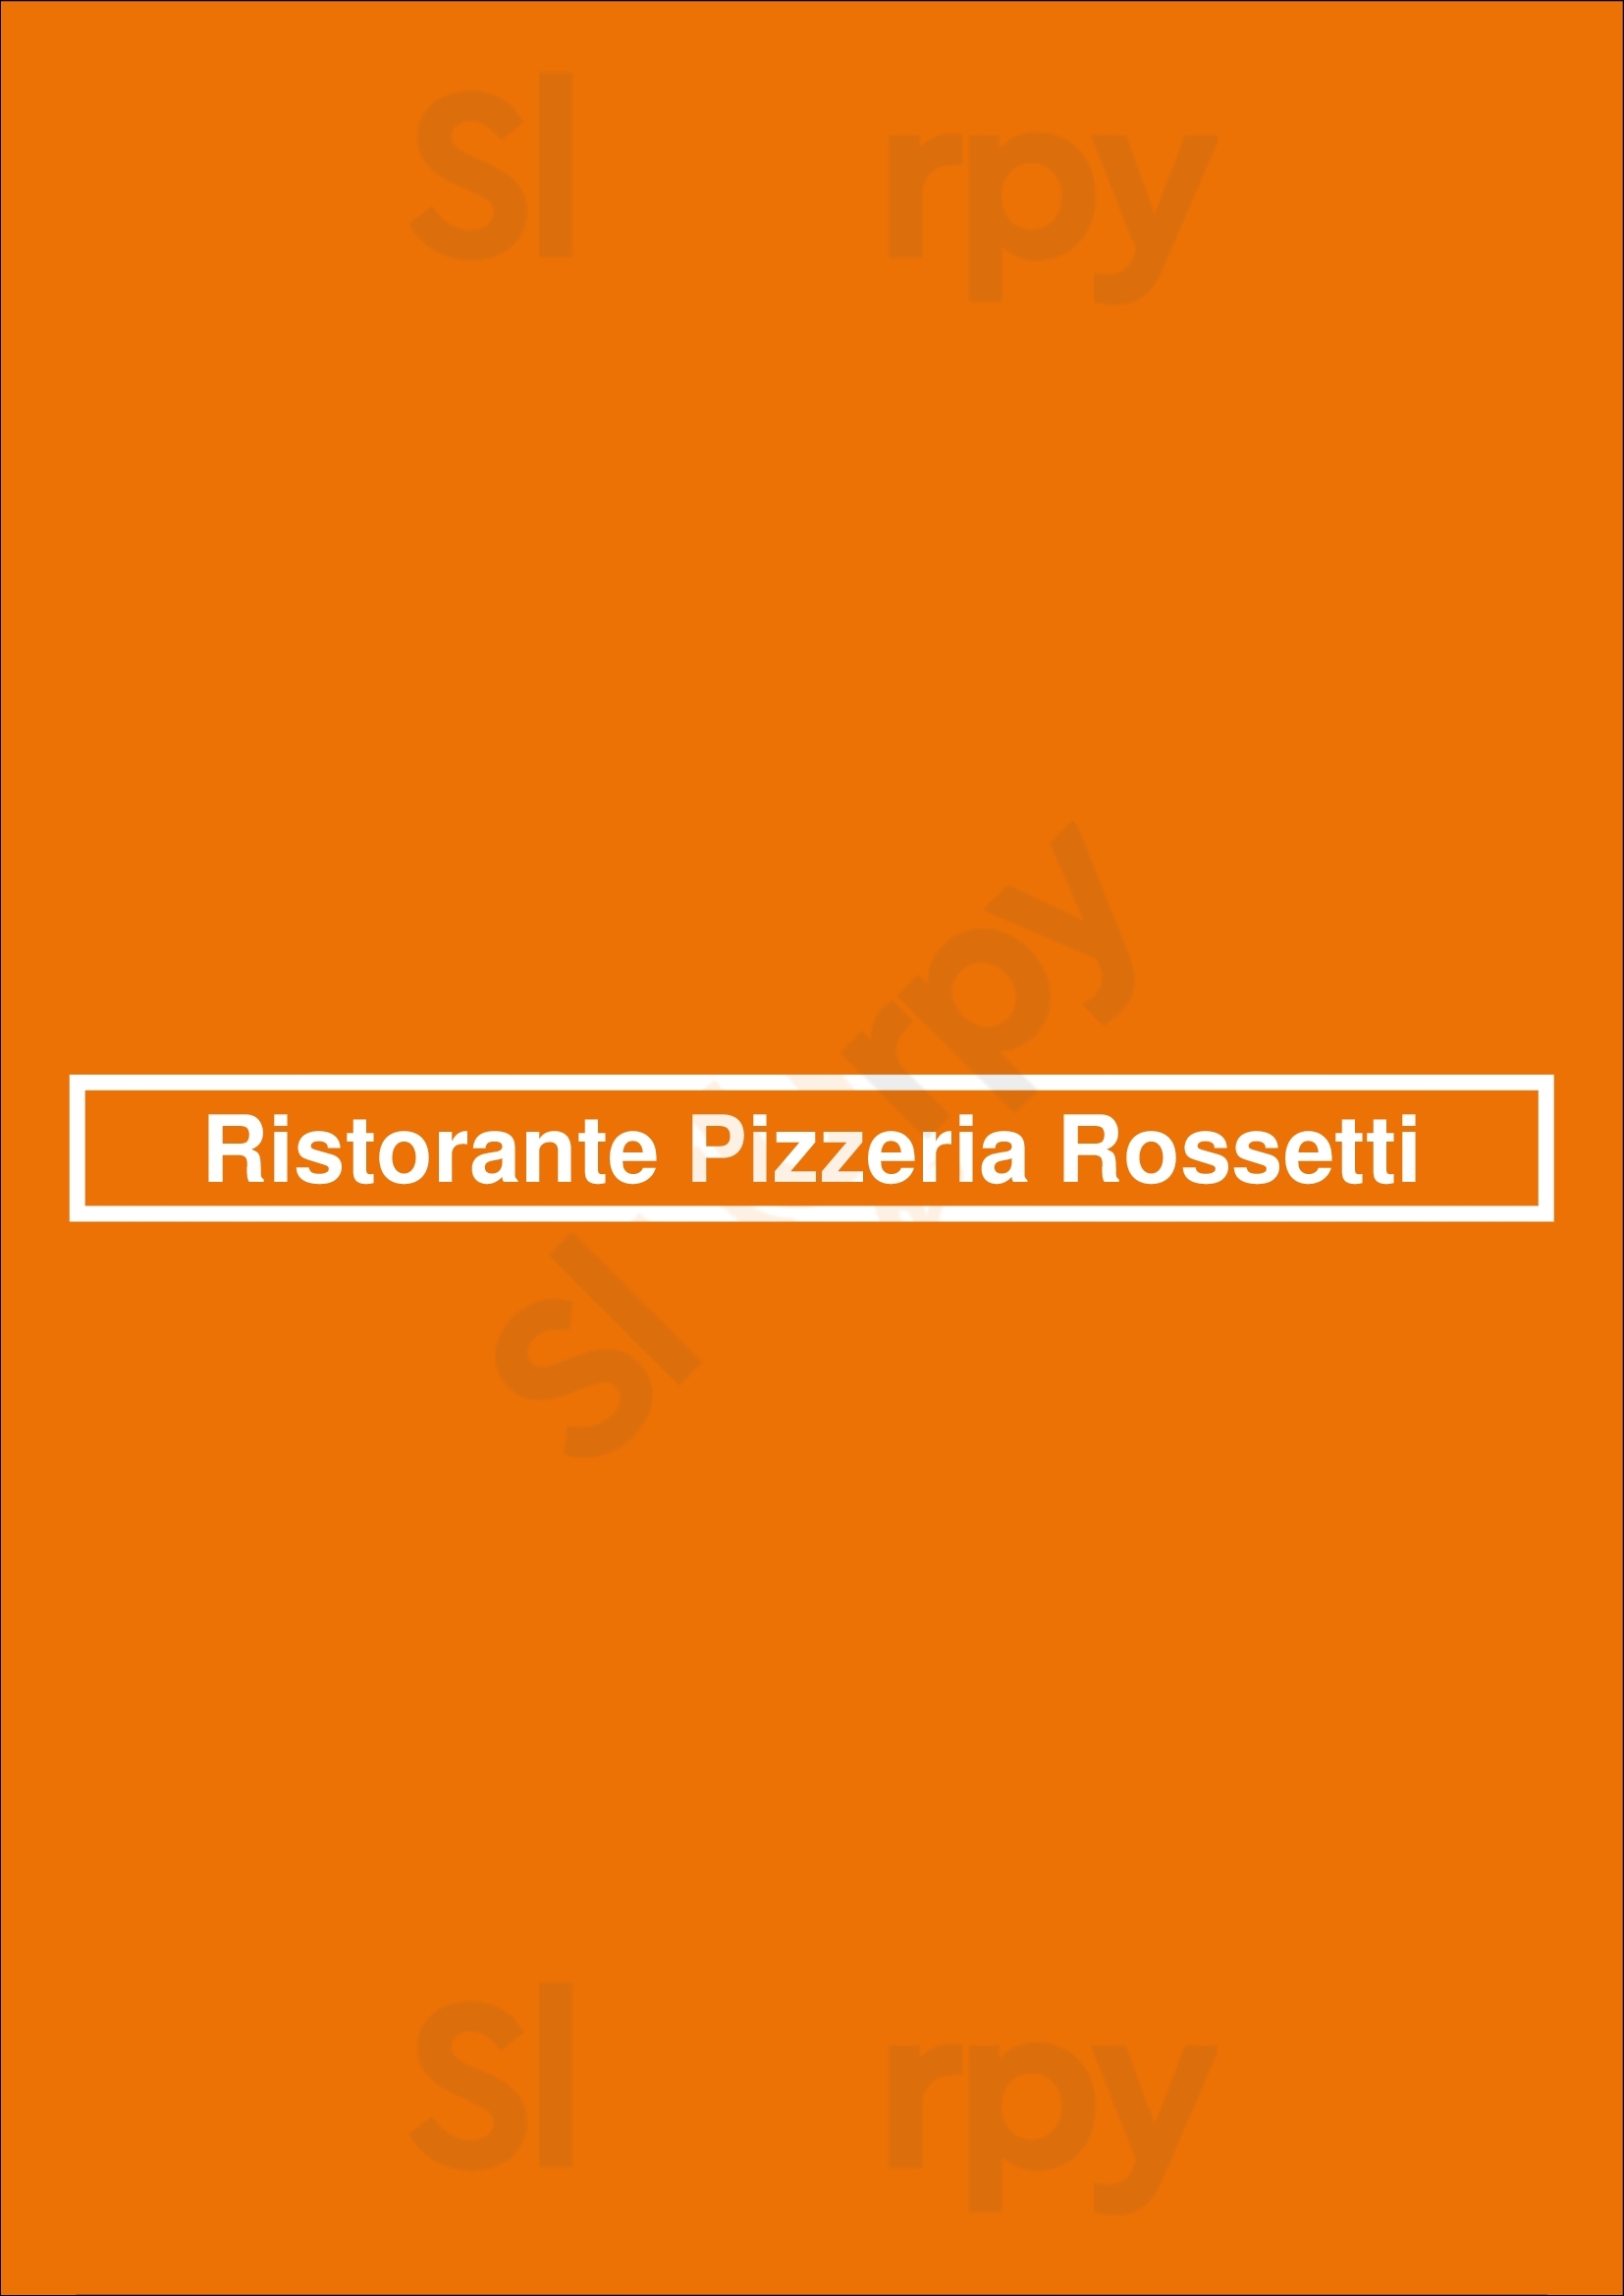 Ristorante Pizzeria Rossetti Oss Menu - 1